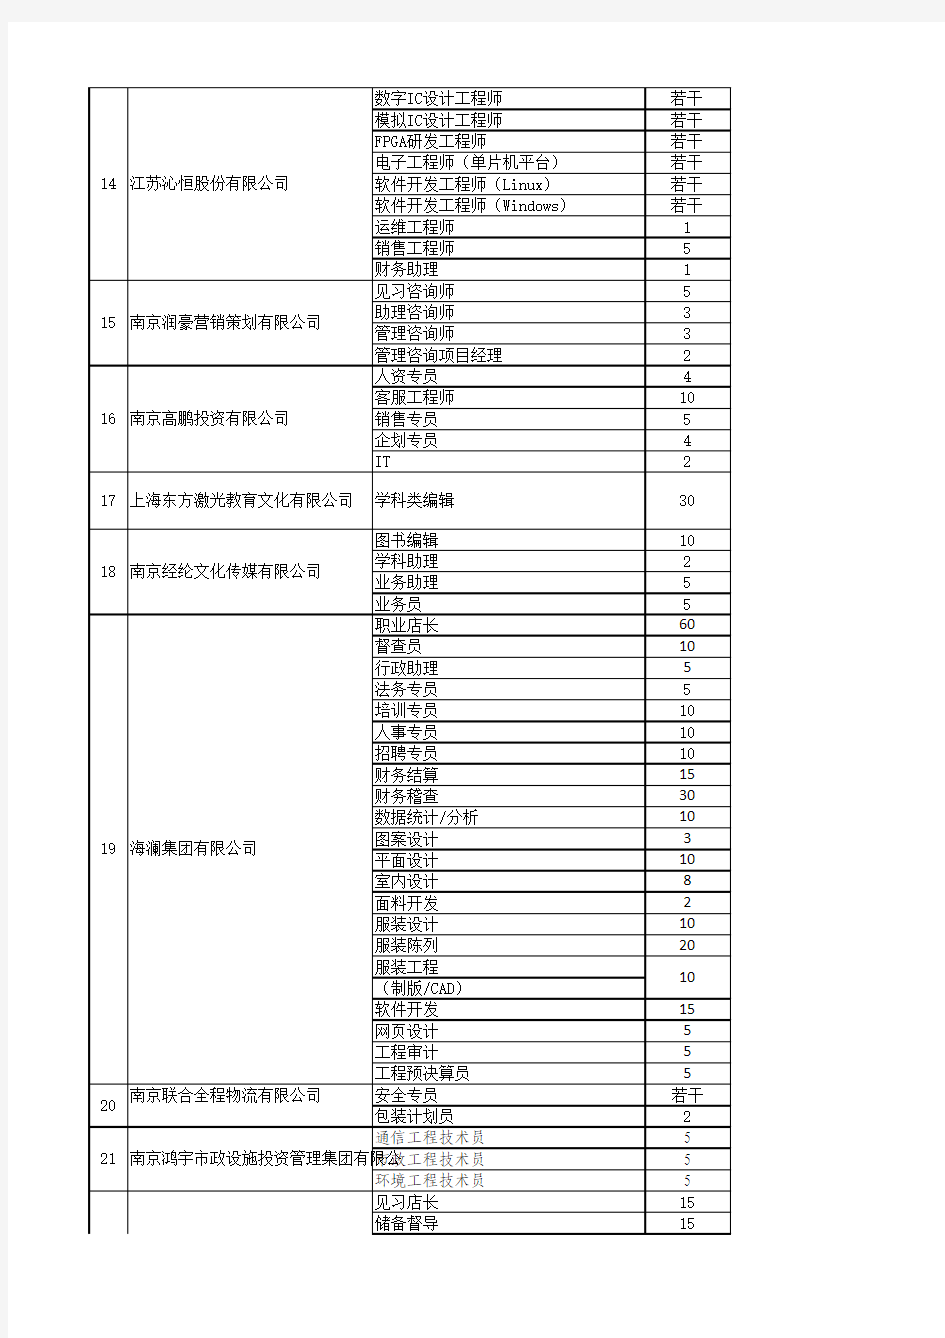 南京信息工程大学2014年春季综合性校园招聘会参会单位需求信息表(确定) (1)